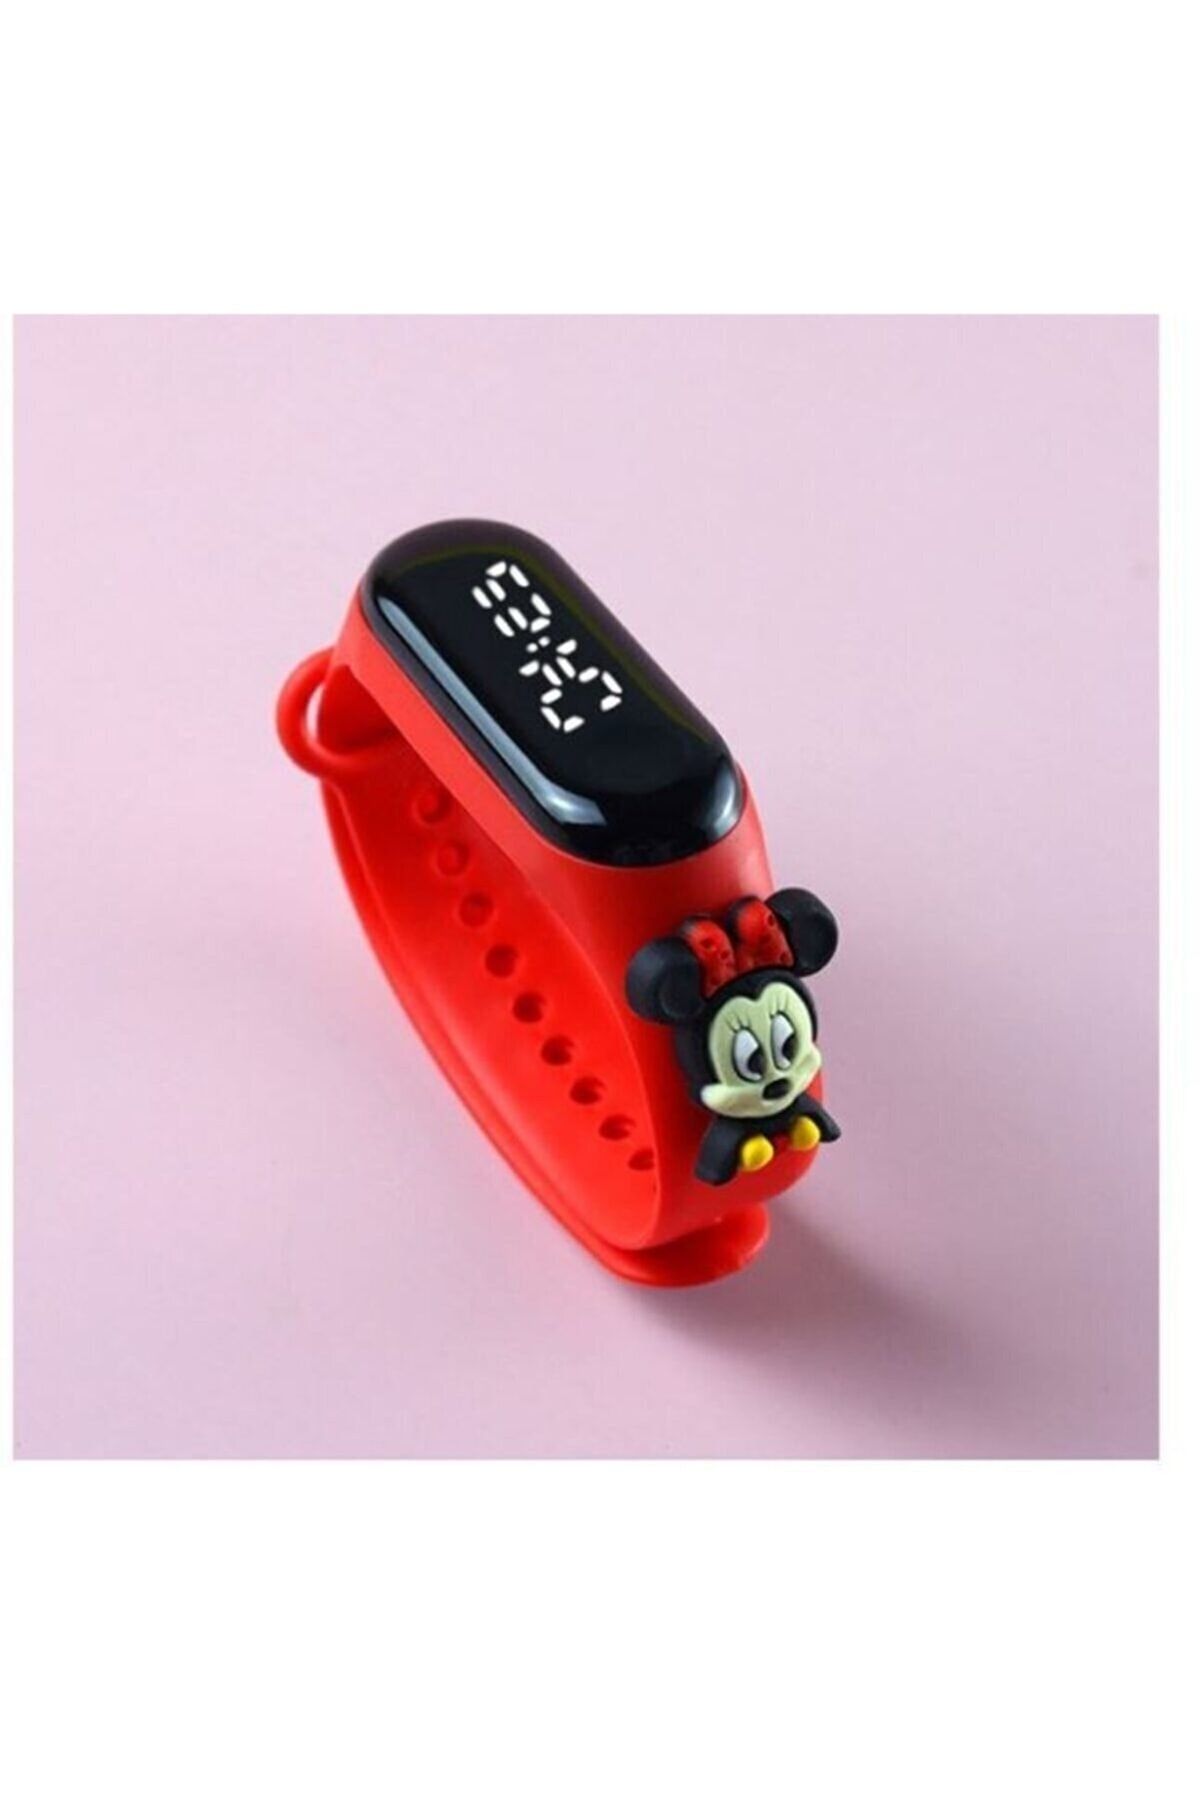 Schulzz Yeni Disney Led Dokunmatik Çocuk Spor Elektronik Kol Saat Kırmızı Özel Saat Kutusunda Hediye Paketi